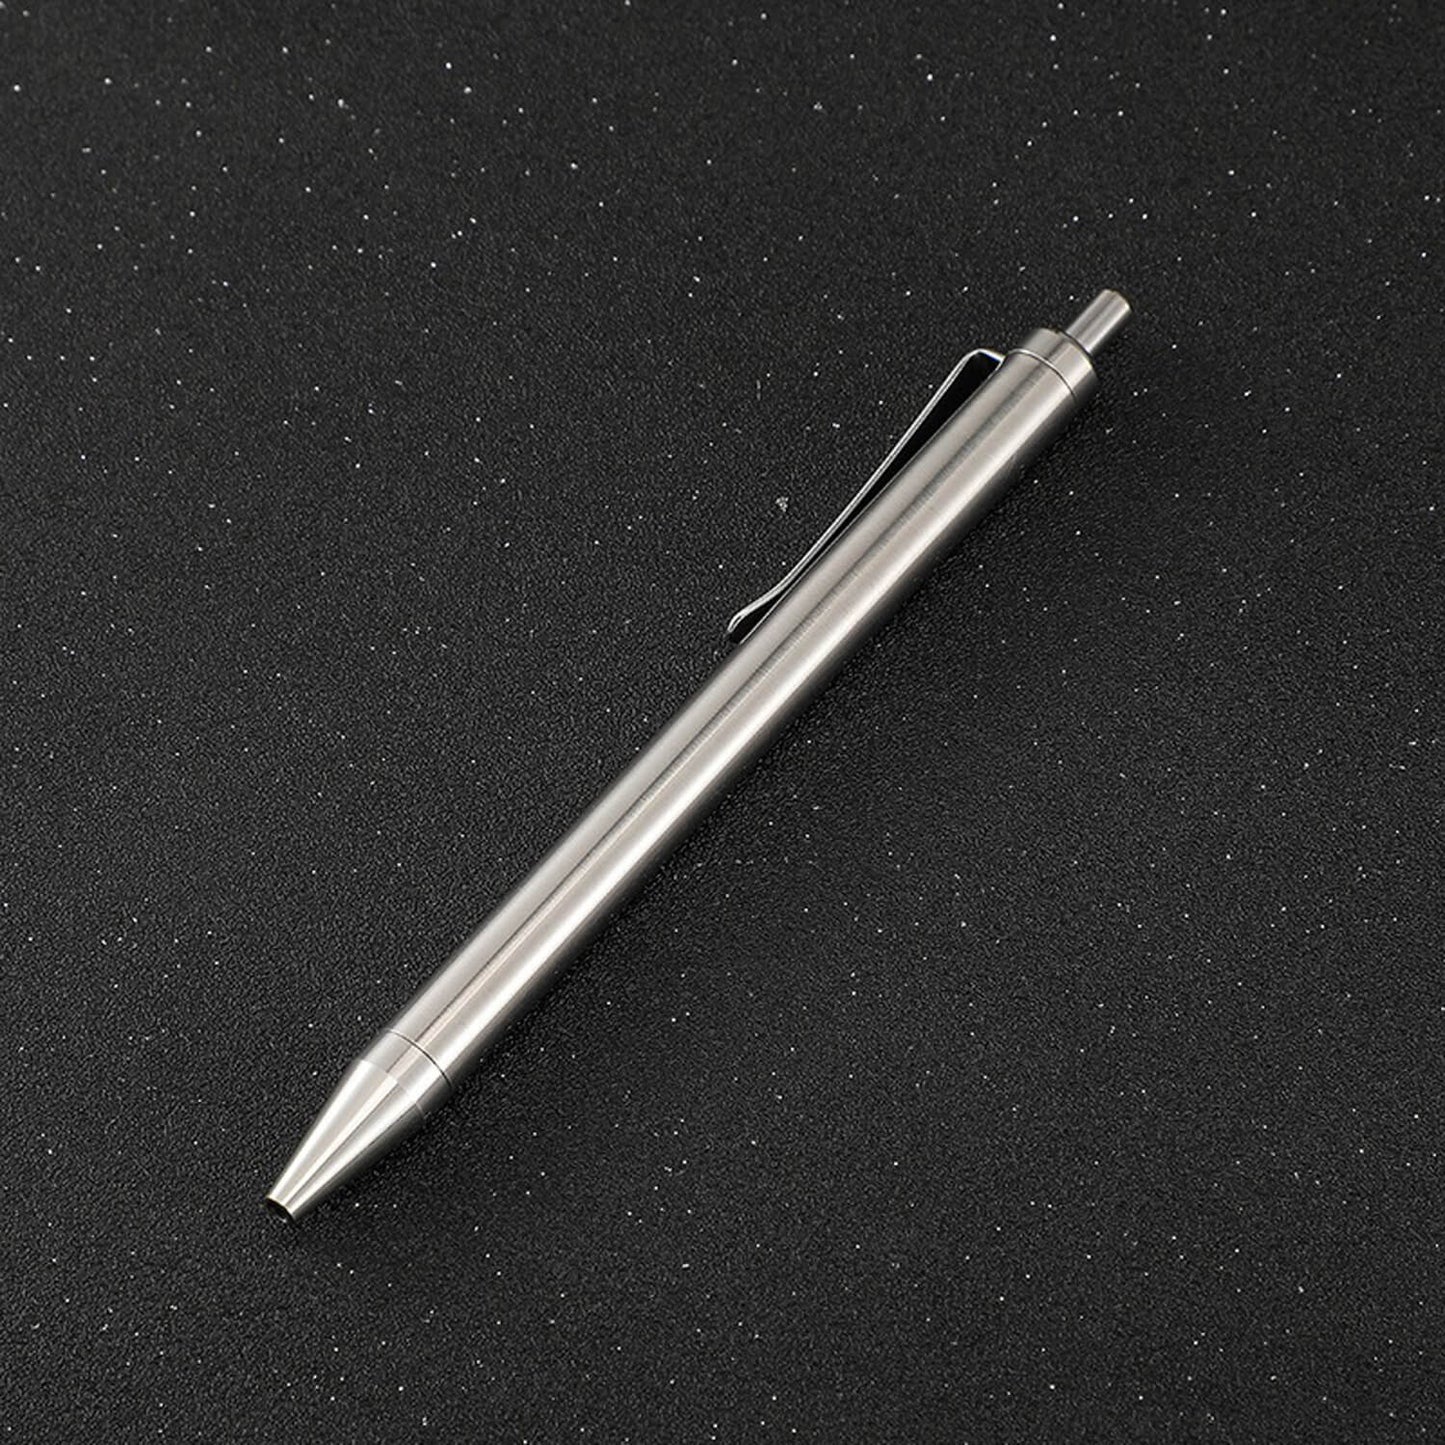 Pre-order Polar Titanium Executive Pen